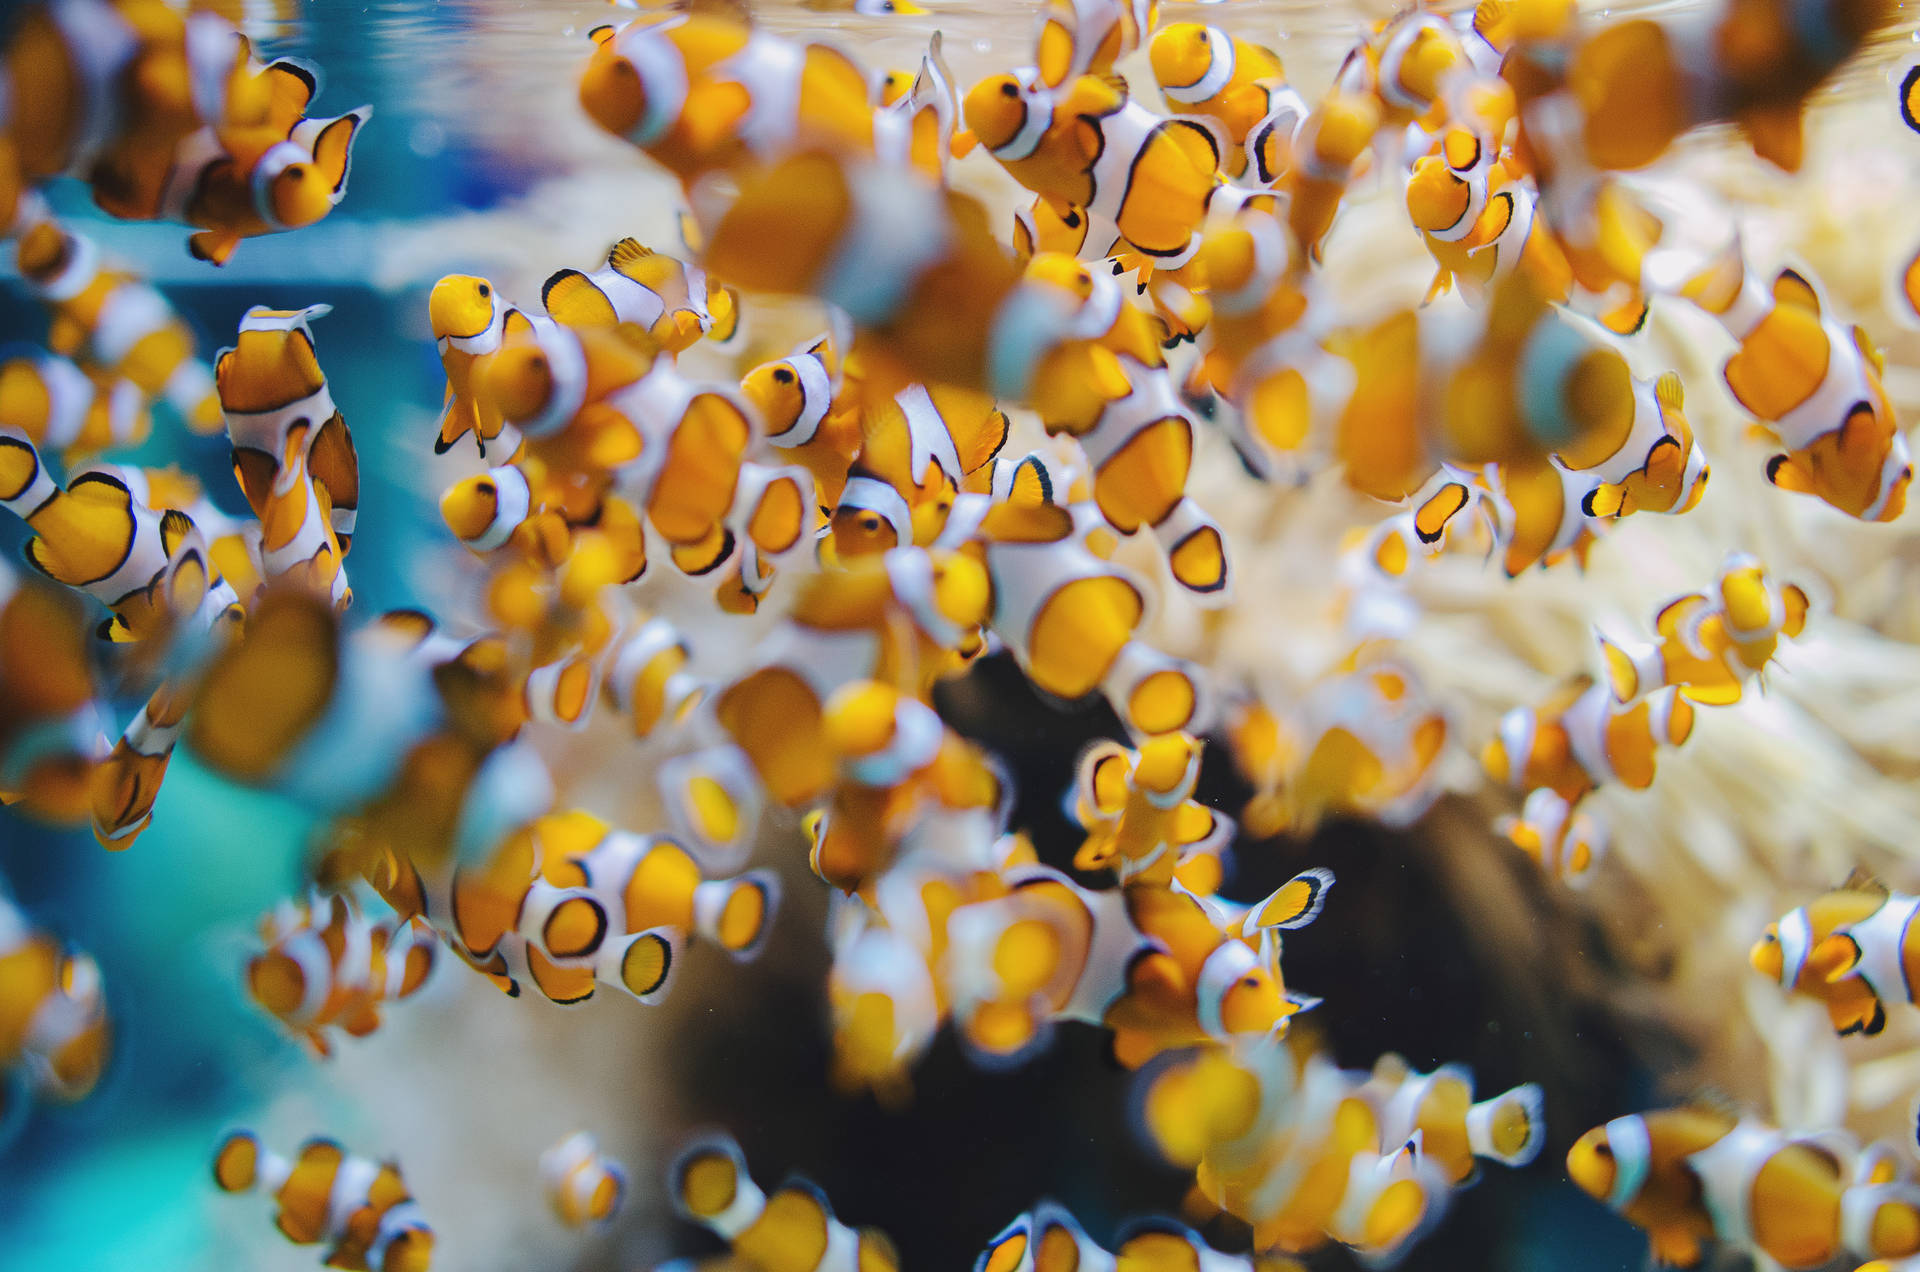 Clownfishfingerlings In 4k Ultra Hd Qualität Wallpaper